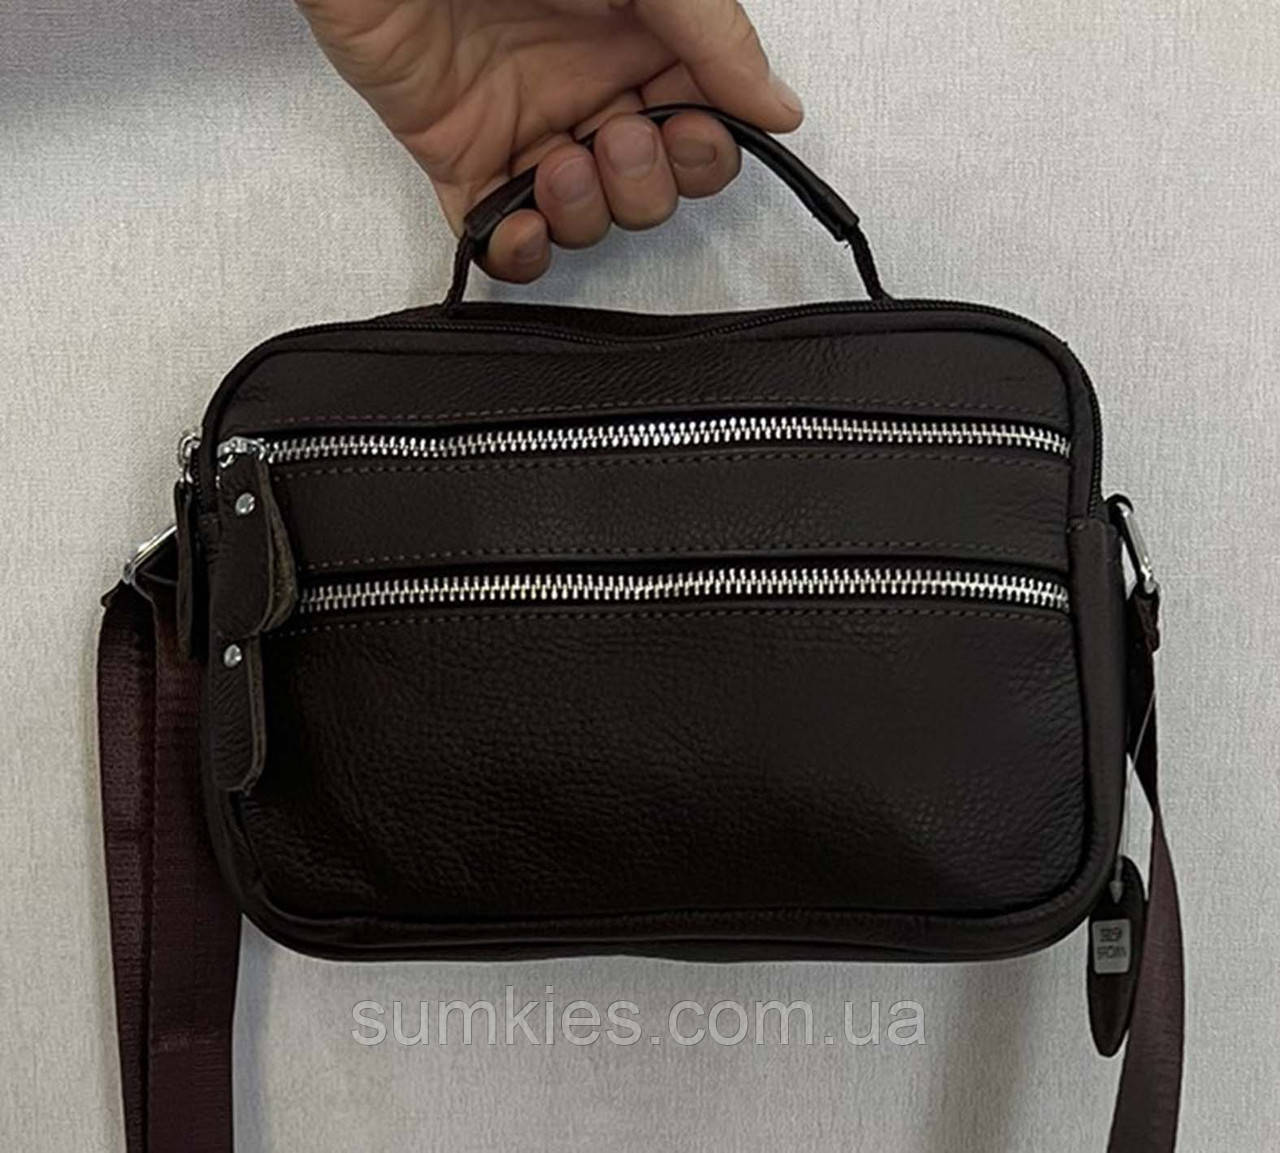 Шкіряна чоловіча сумка через плече es3925-1 коричнева барсетка 22х16см